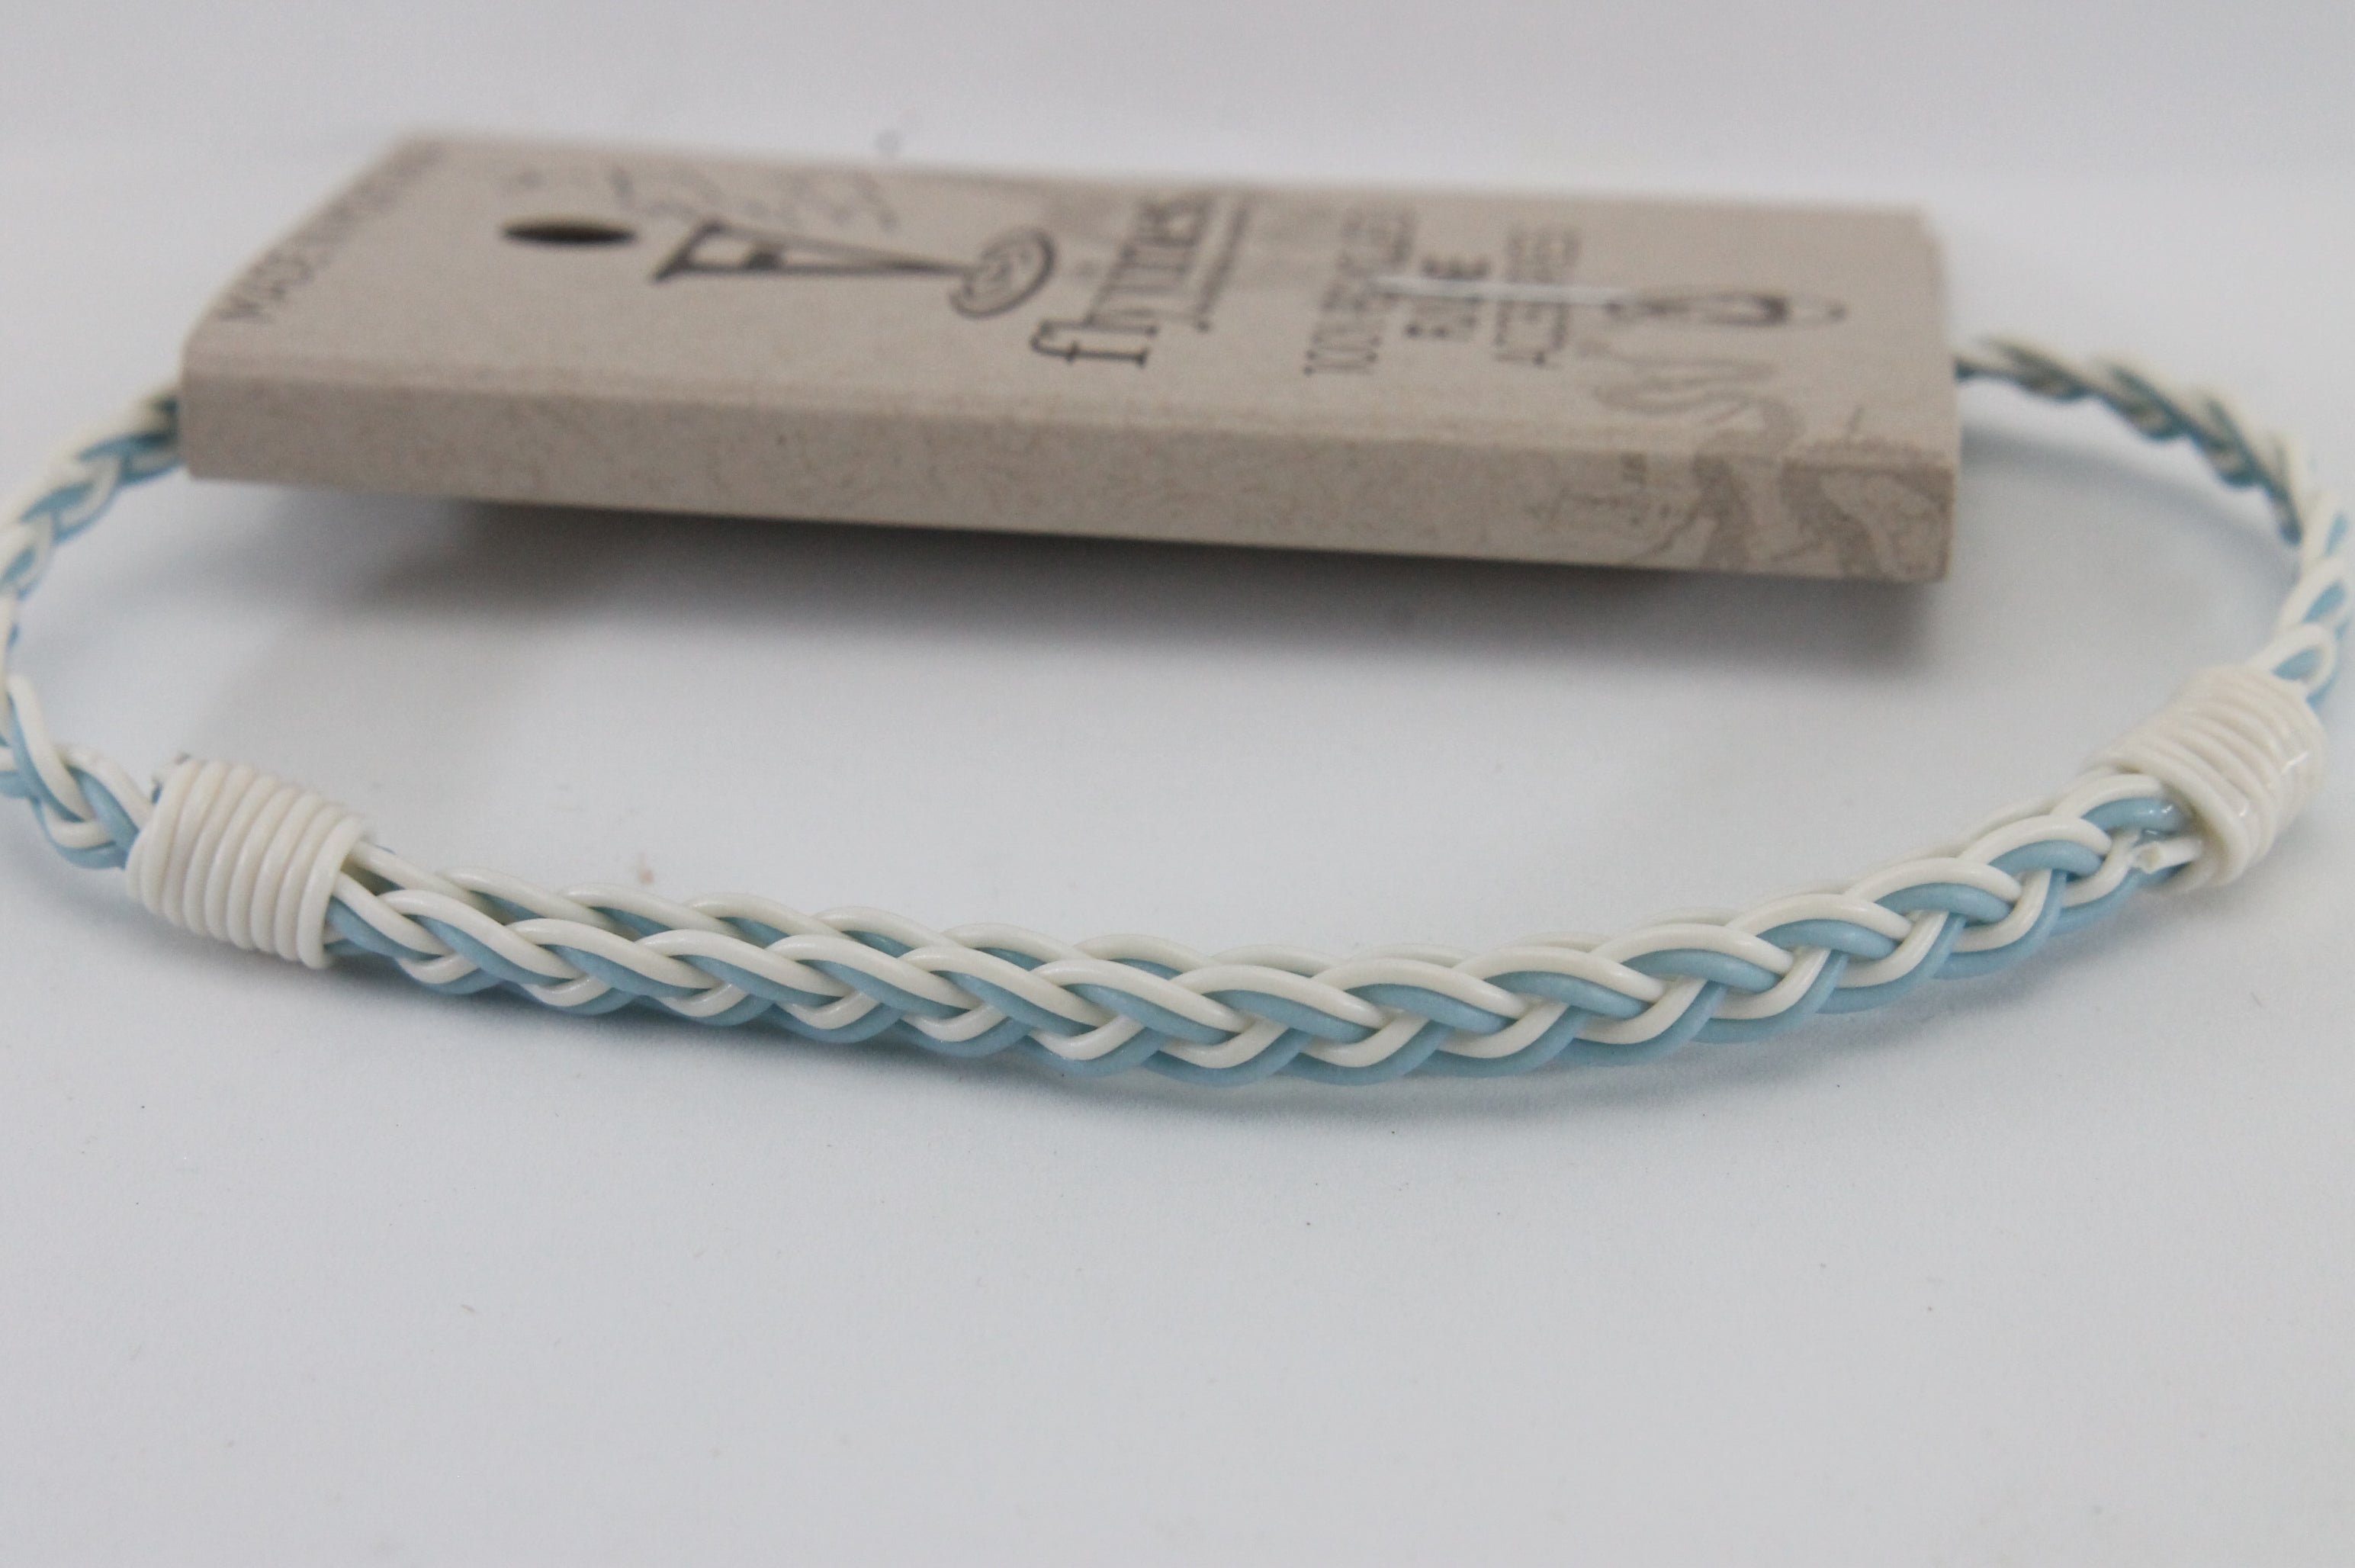 Flyvine Bracelet Solid Color Braid